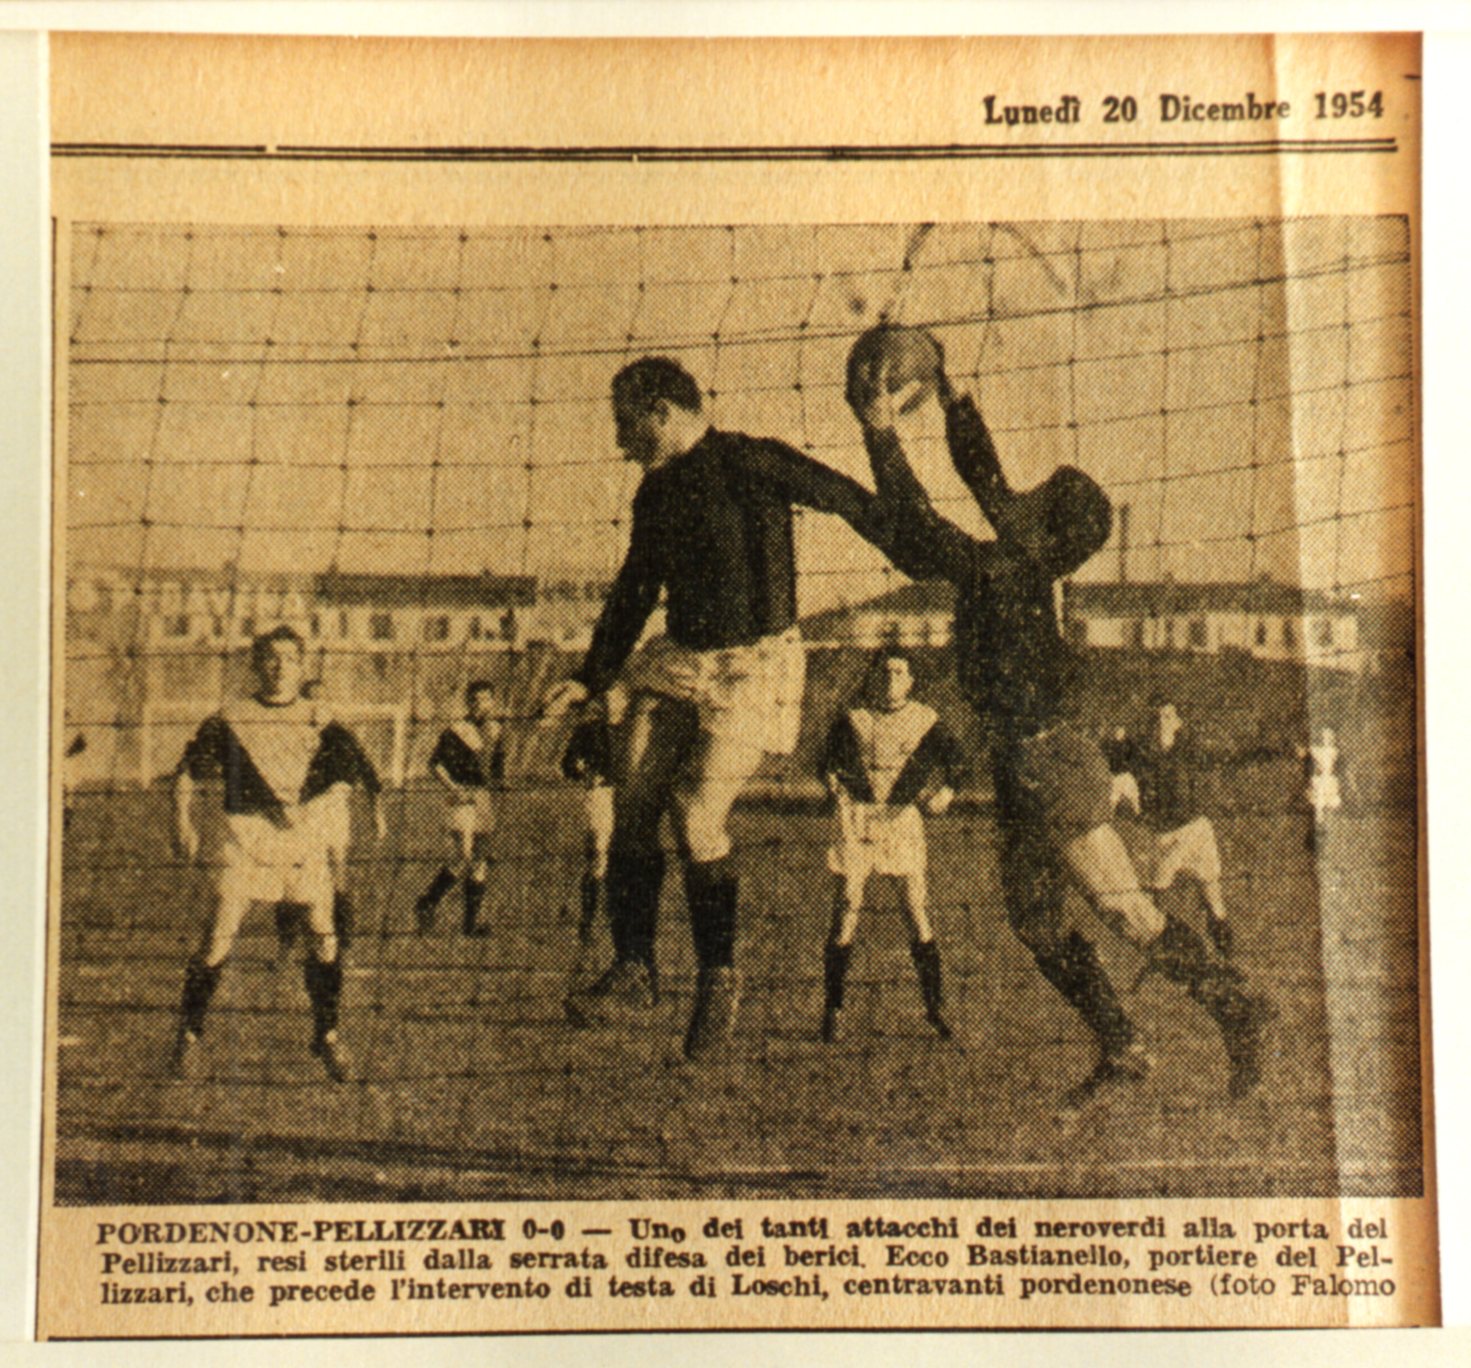 Pordenone Pellizzari  0-0  1954-55   A